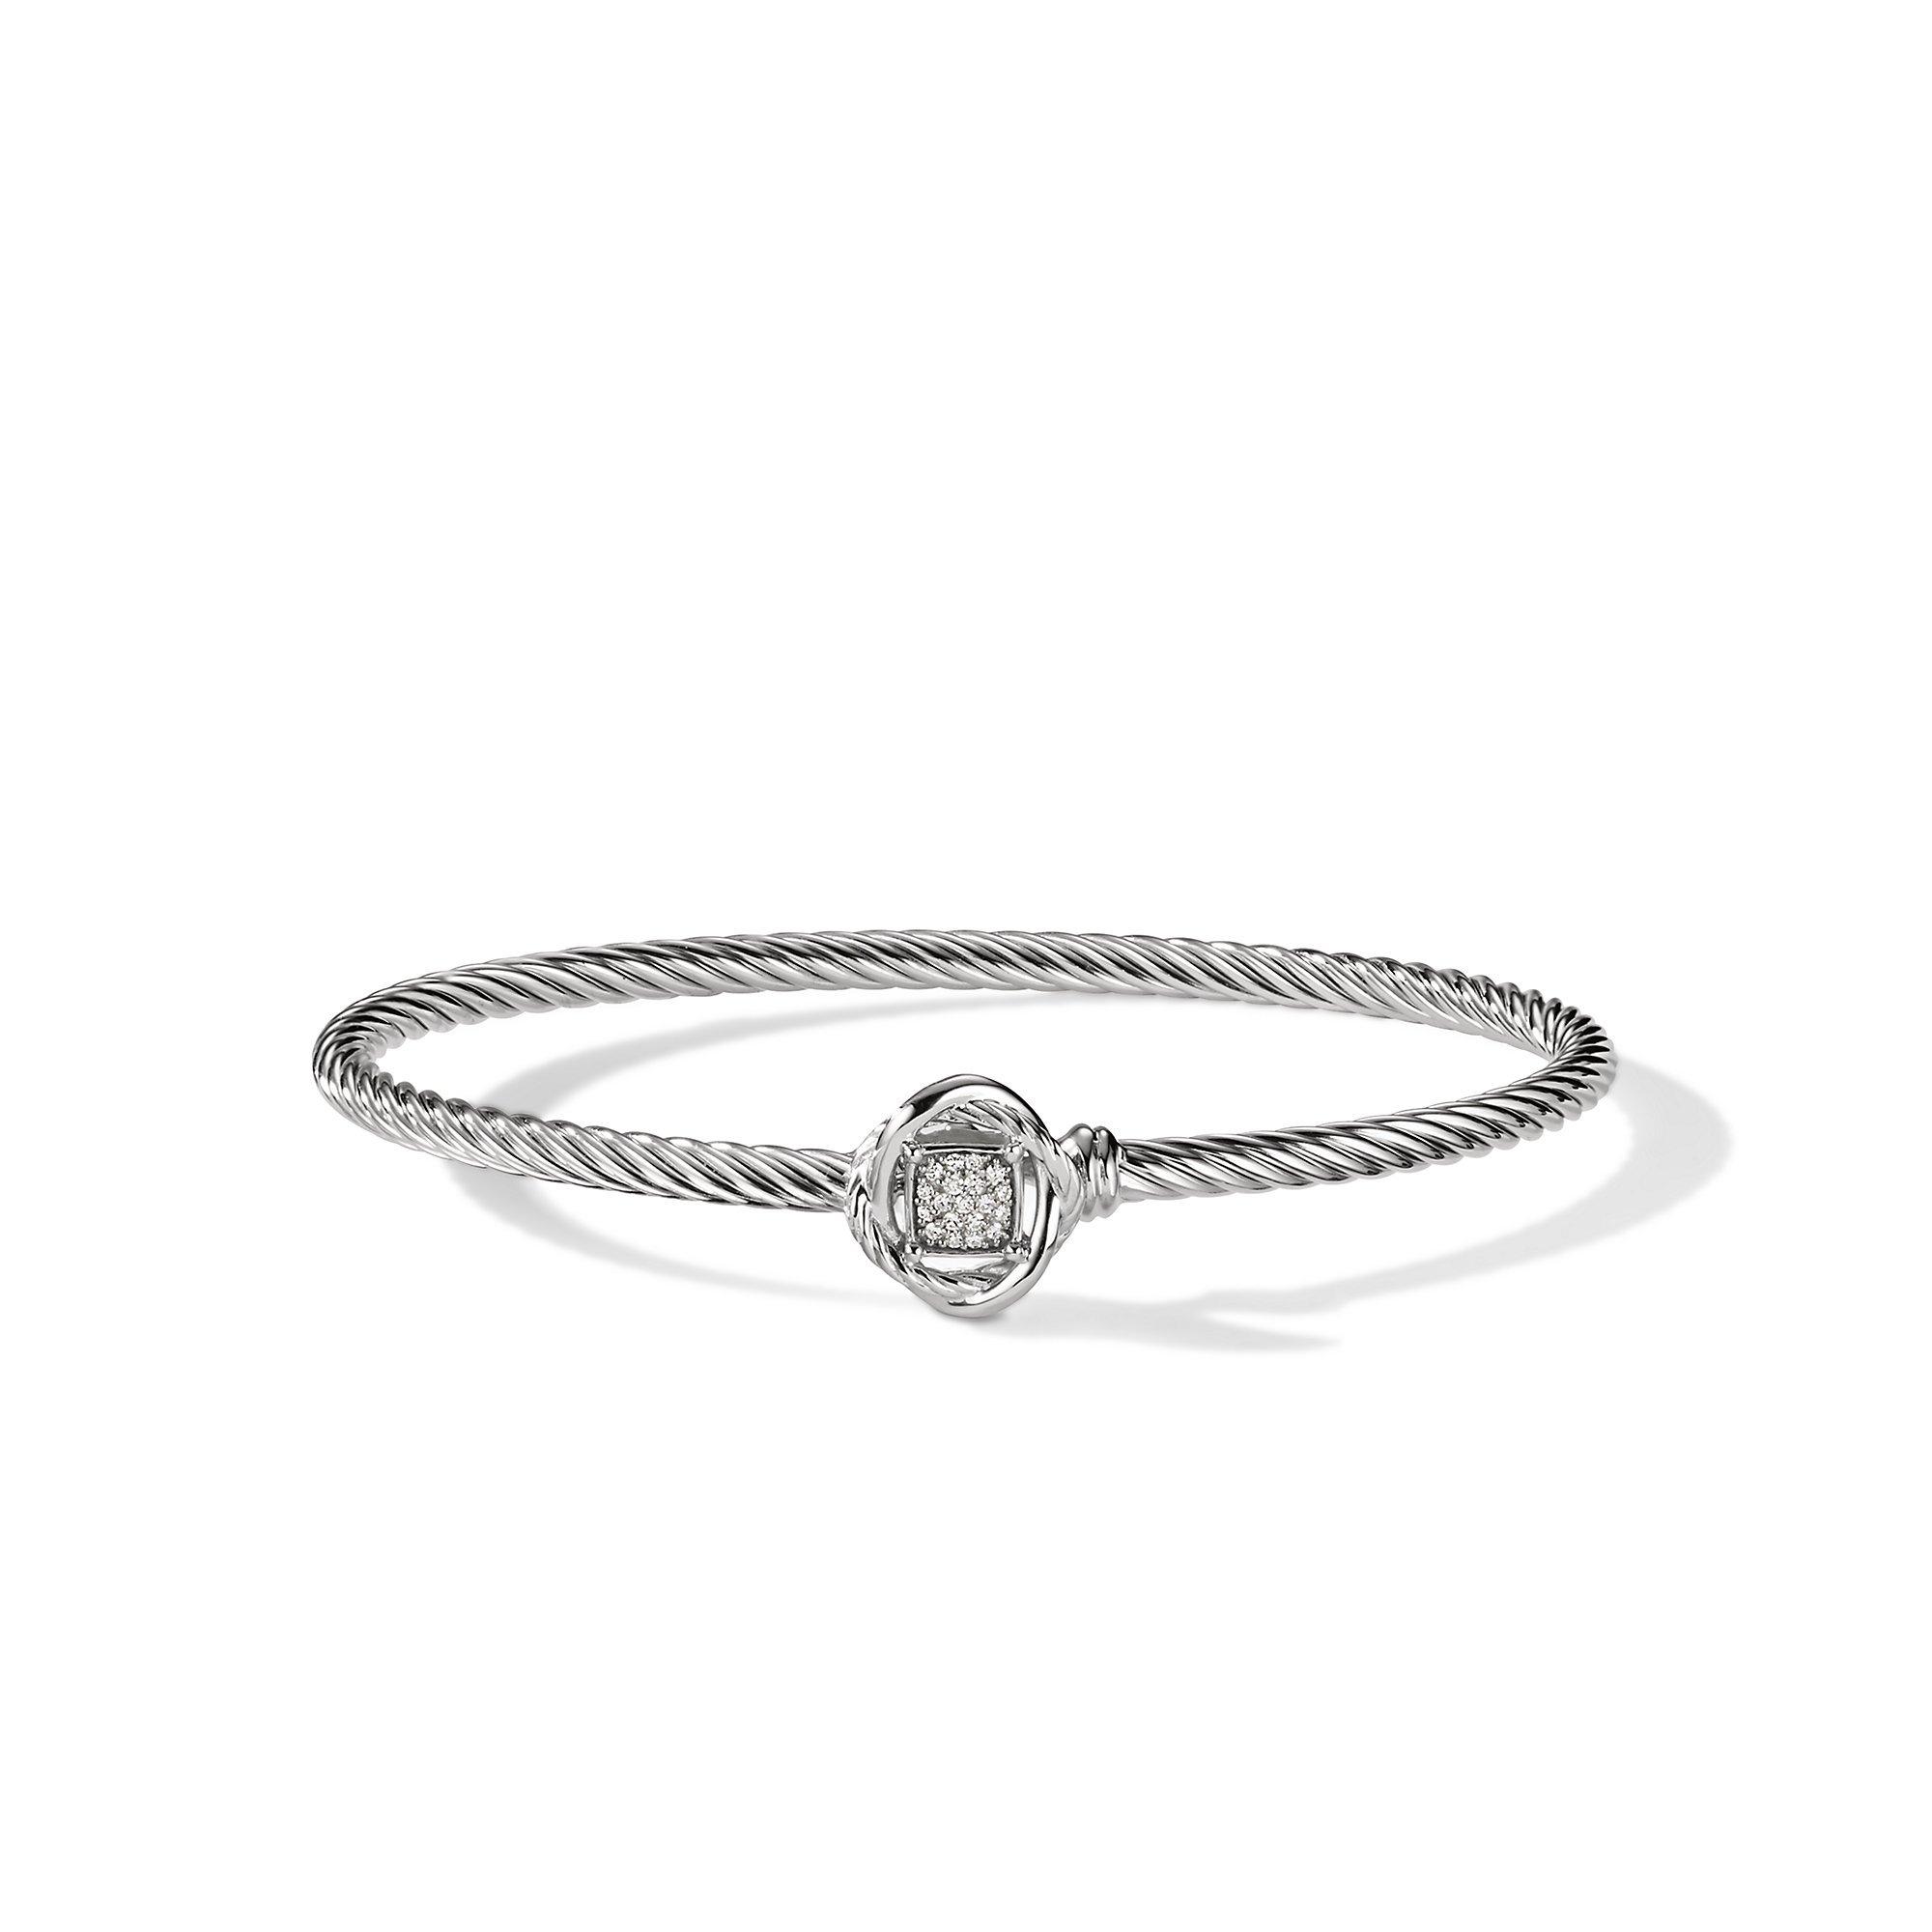 David Yurman Infinity Bracelet with Diamonds | Front View